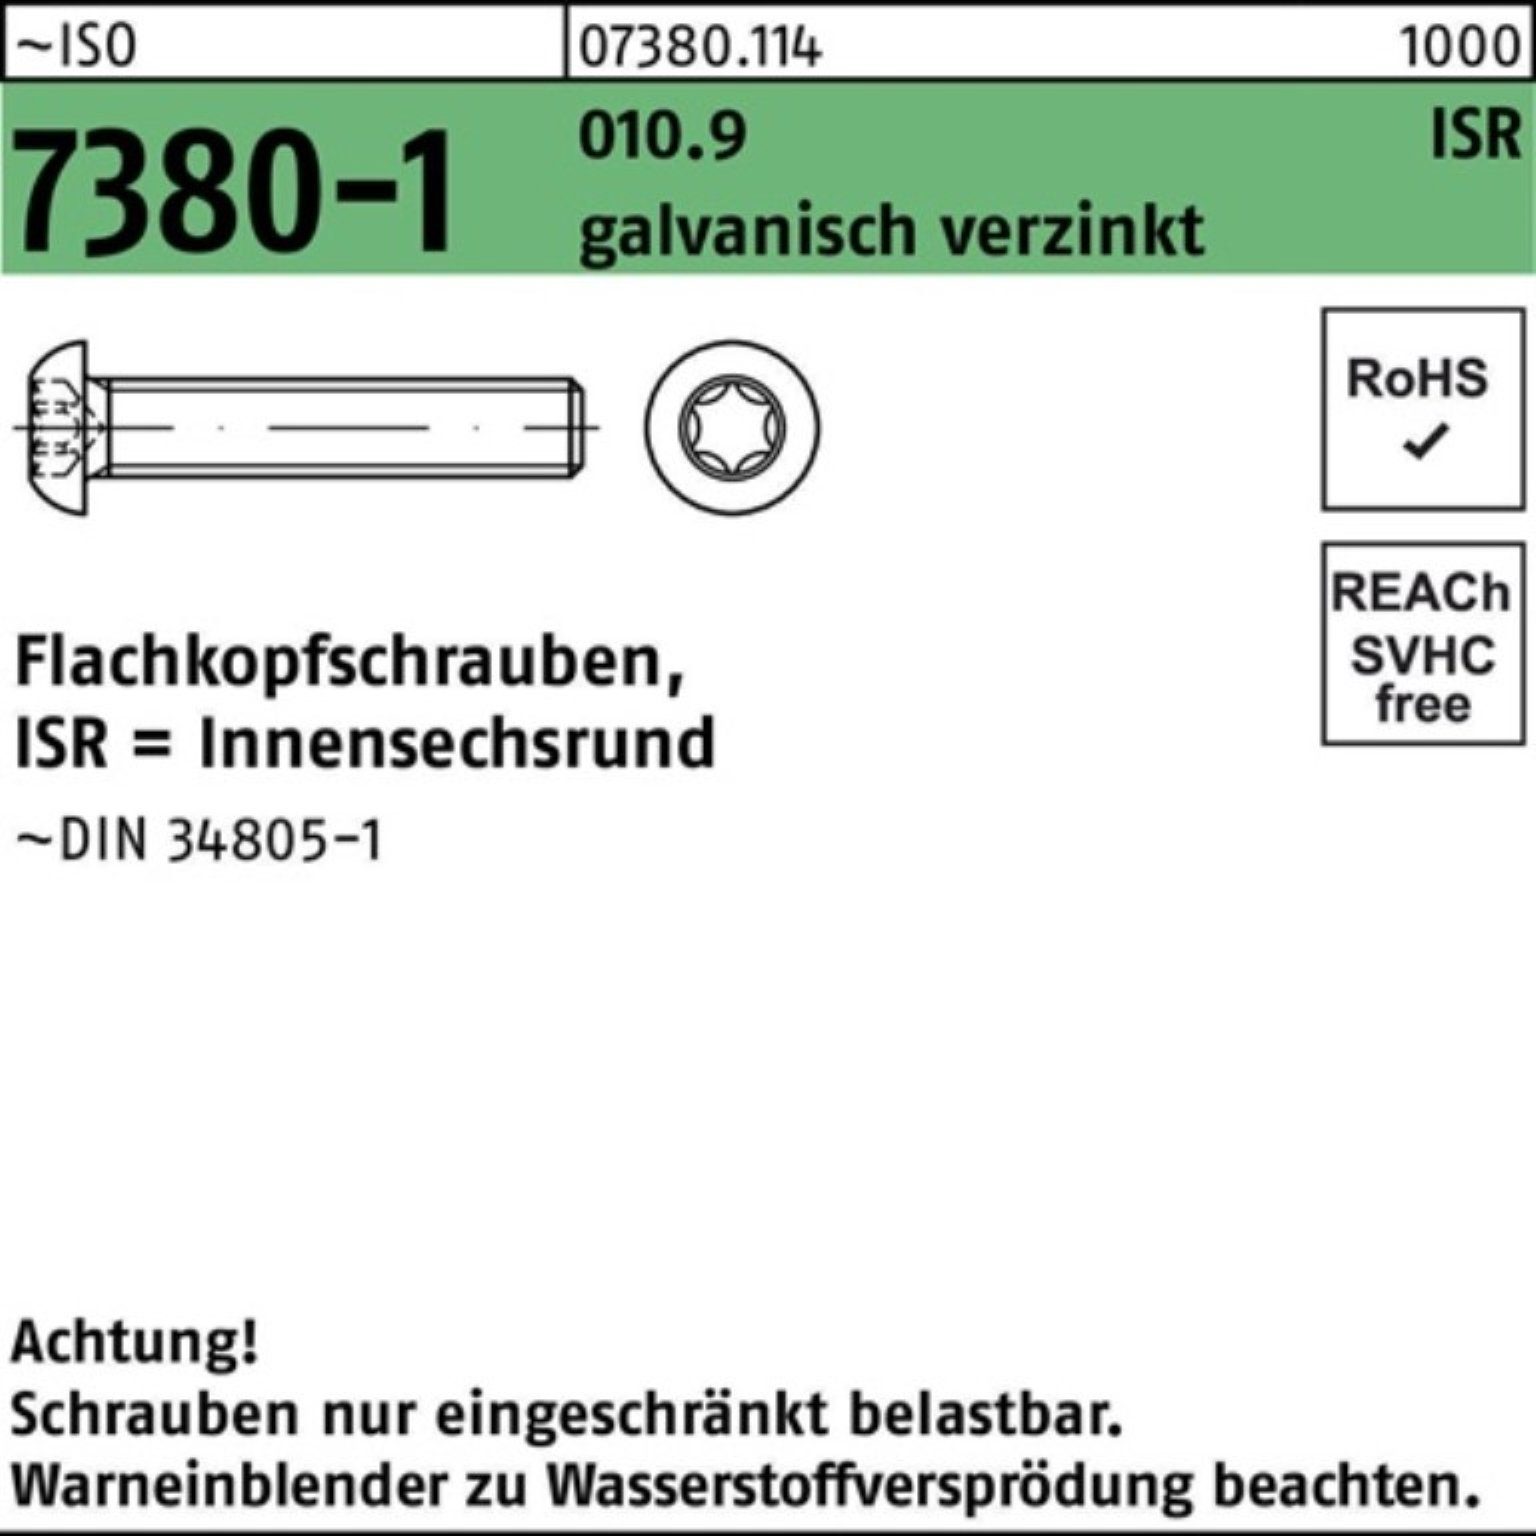 Reyher Schraube 7380-1 010.9 M8x16-T40 Pack ISO galv.verz. 200er Flachkopfschraube ISR